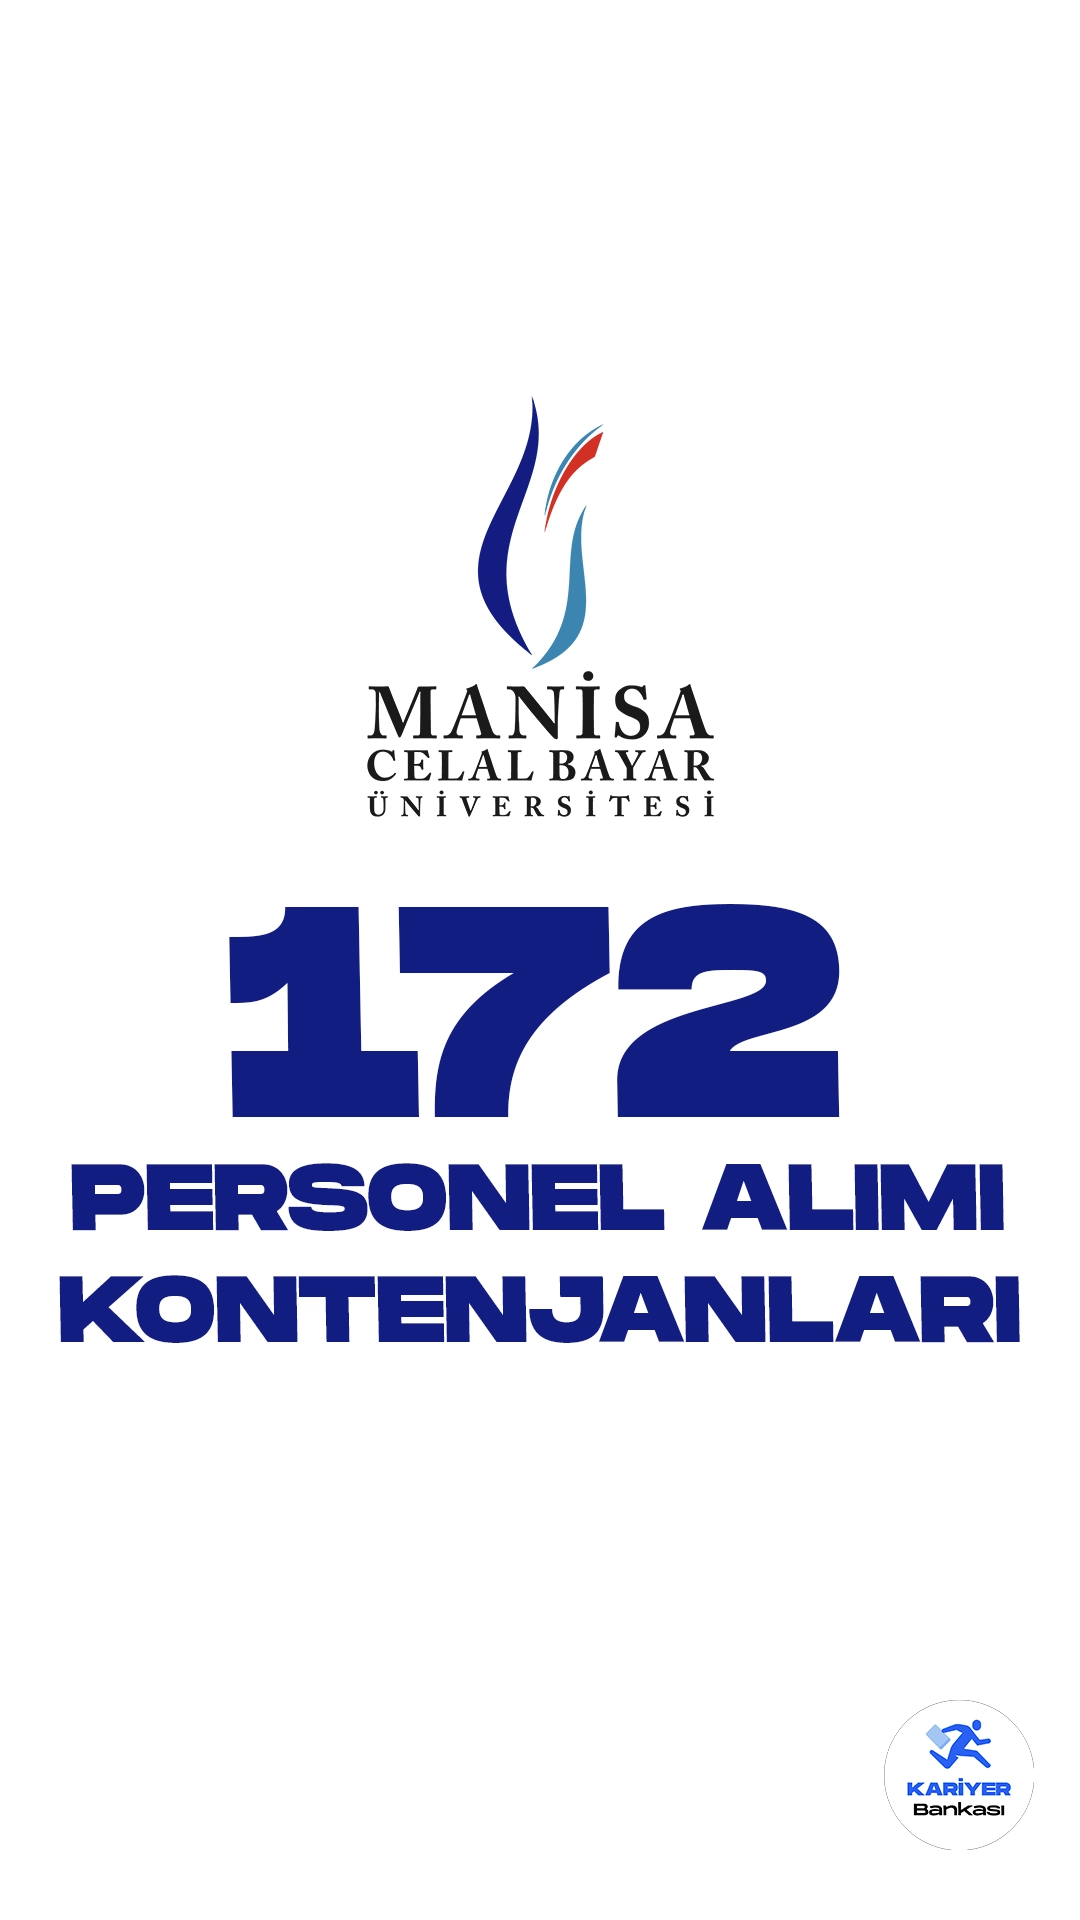 Manisa Celal Bayar Üniversitesi (MCBÜ) personel alımı başvuruları sürüyor. Kontenjan dağılımı ve başvuru şartlarına dair tüm detaylar Kariyerbankasi.net'in bu haberinde yer alıyor.